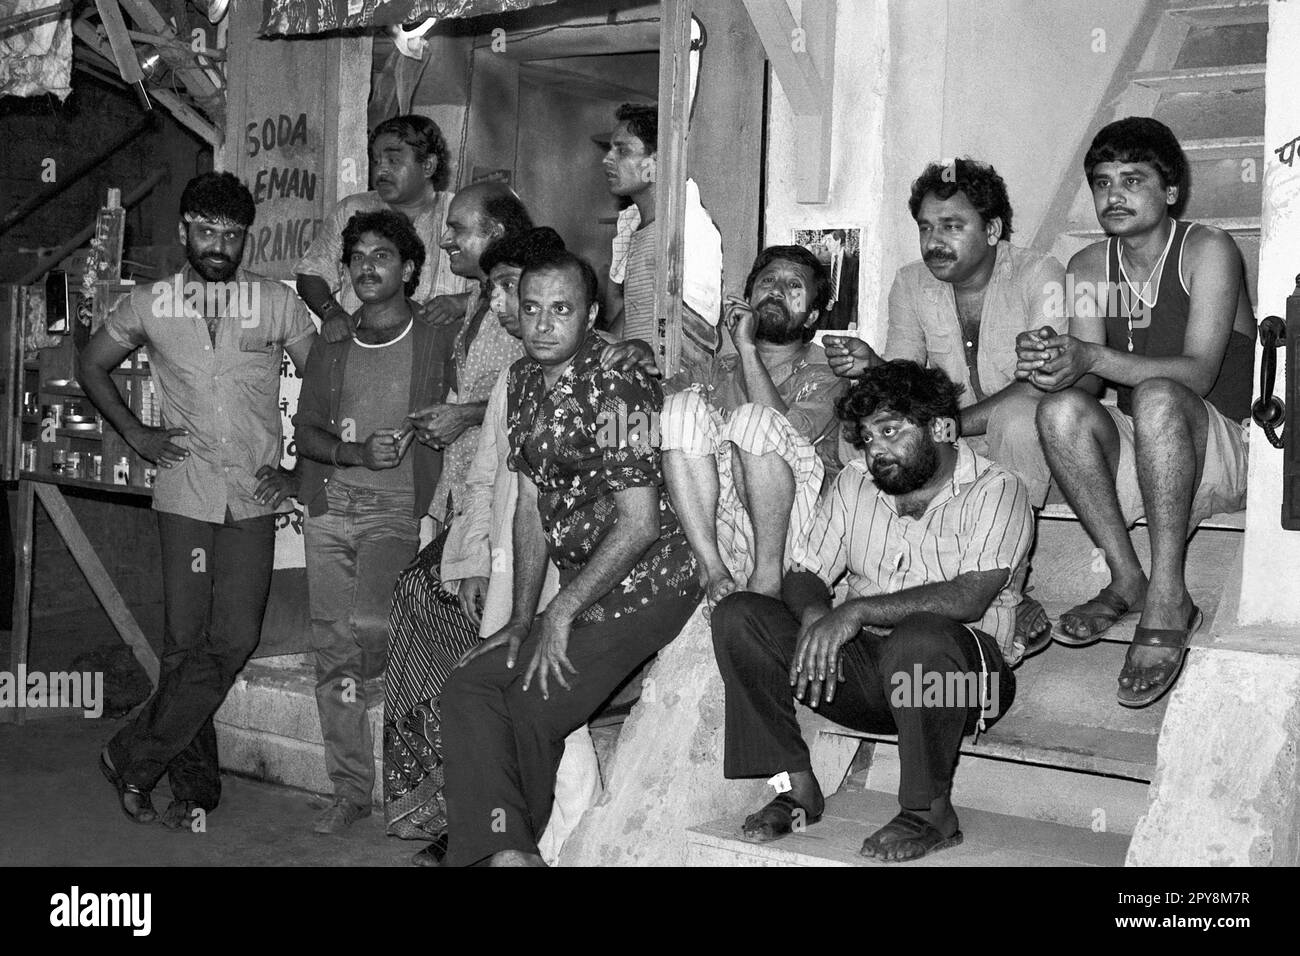 Indio viejo vintage 1980s blanco y negro cine de bollywood actores de cine hindi, India, Nukkad rodaje, serie de televisión, India Foto de stock